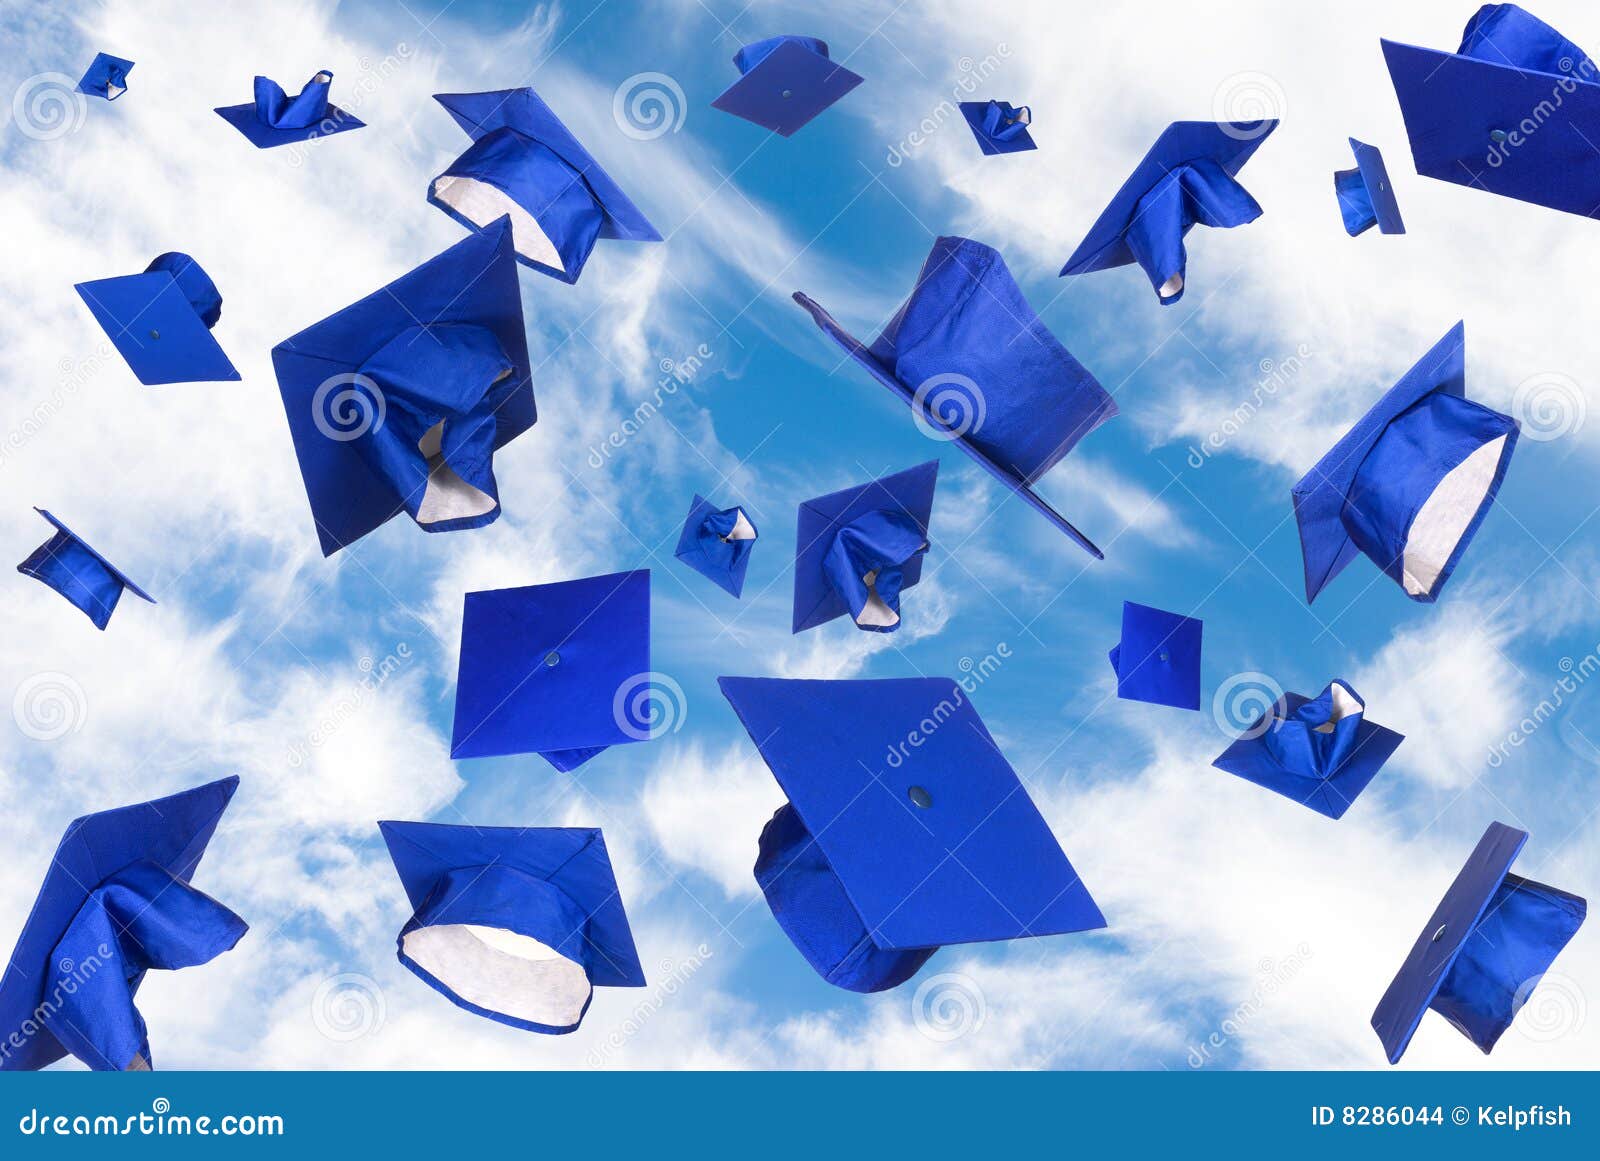 graduation caps in flight